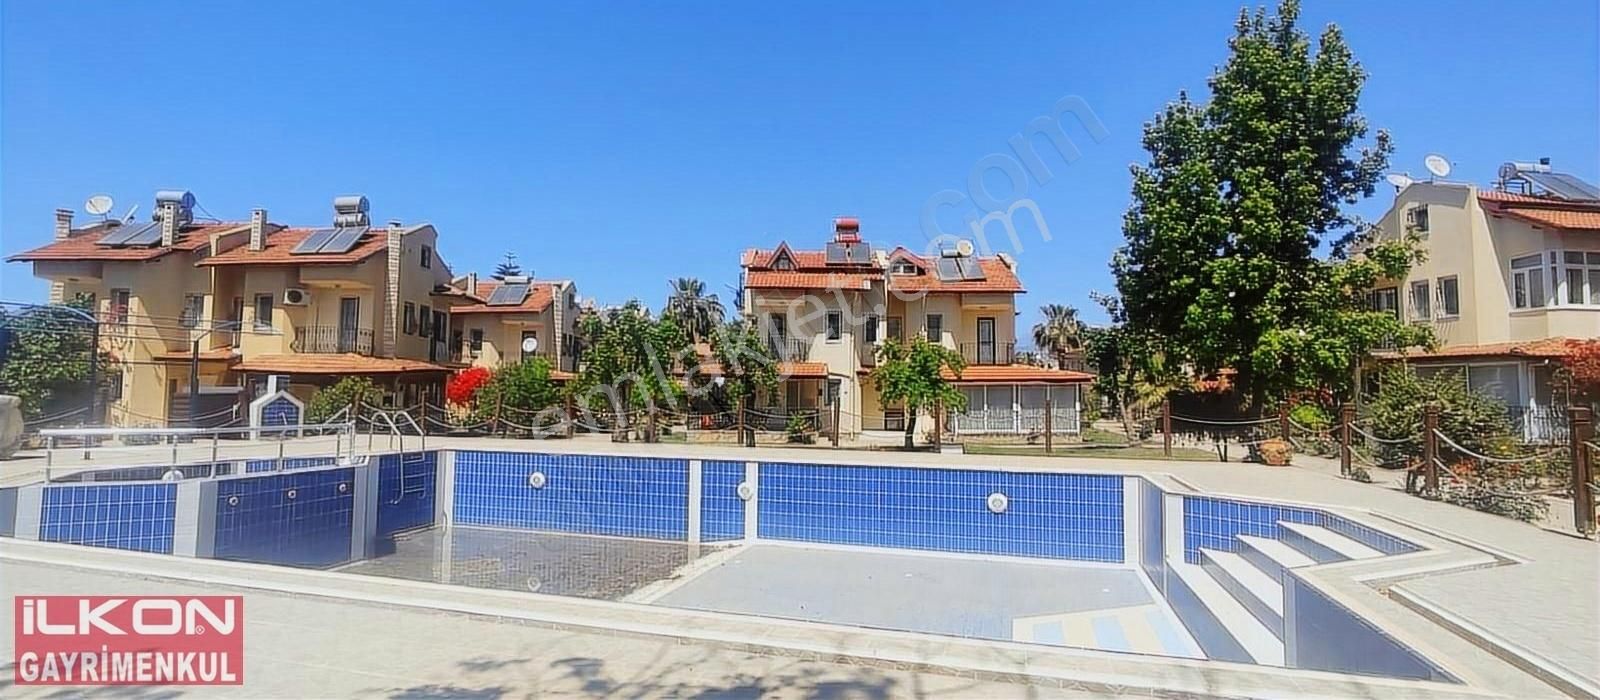 Fethiye Akarca Satılık Villa Fethiye Akarca Mahallesinde İlkon'dan Satılık Tripleks Villa